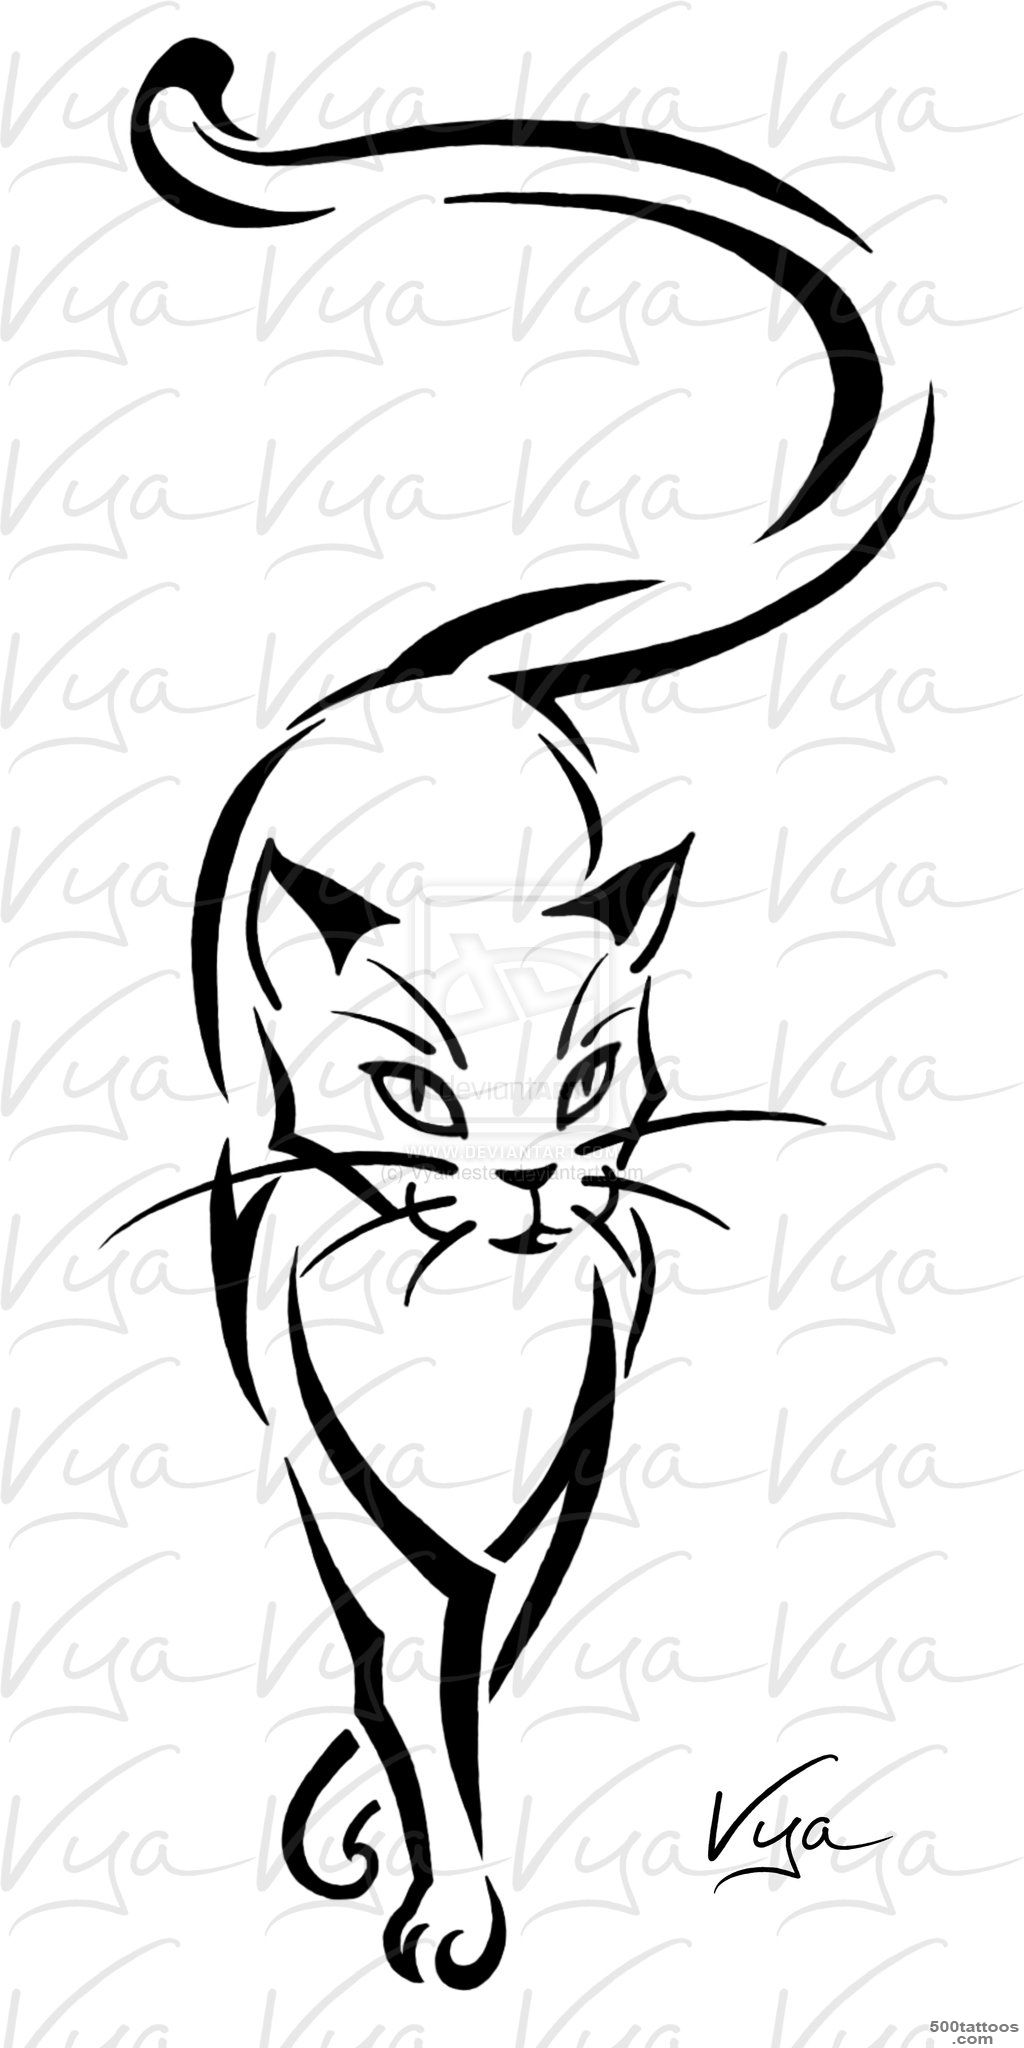 Tat Ideas on Pinterest  Cat Tattoos, Siamese Cat Tattoos and Cat ..._48